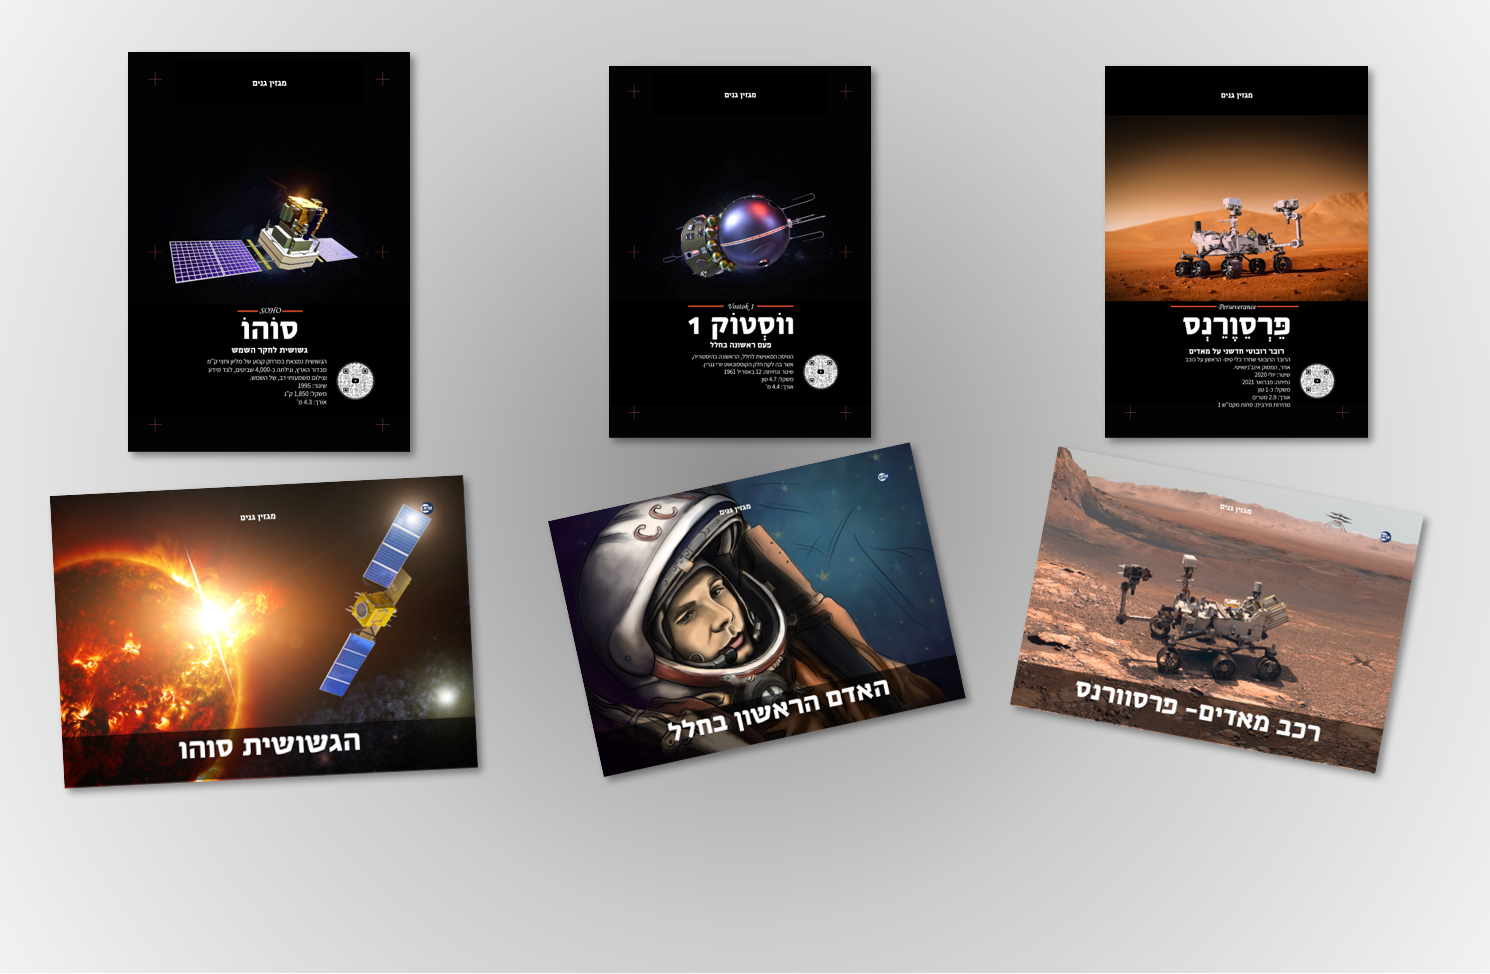 כרטיסי כלי החלל- להעשרת הנושא- גשושיות, רכביםן, חלליות, טלסקופ חלל, מעבורת ועוד. 